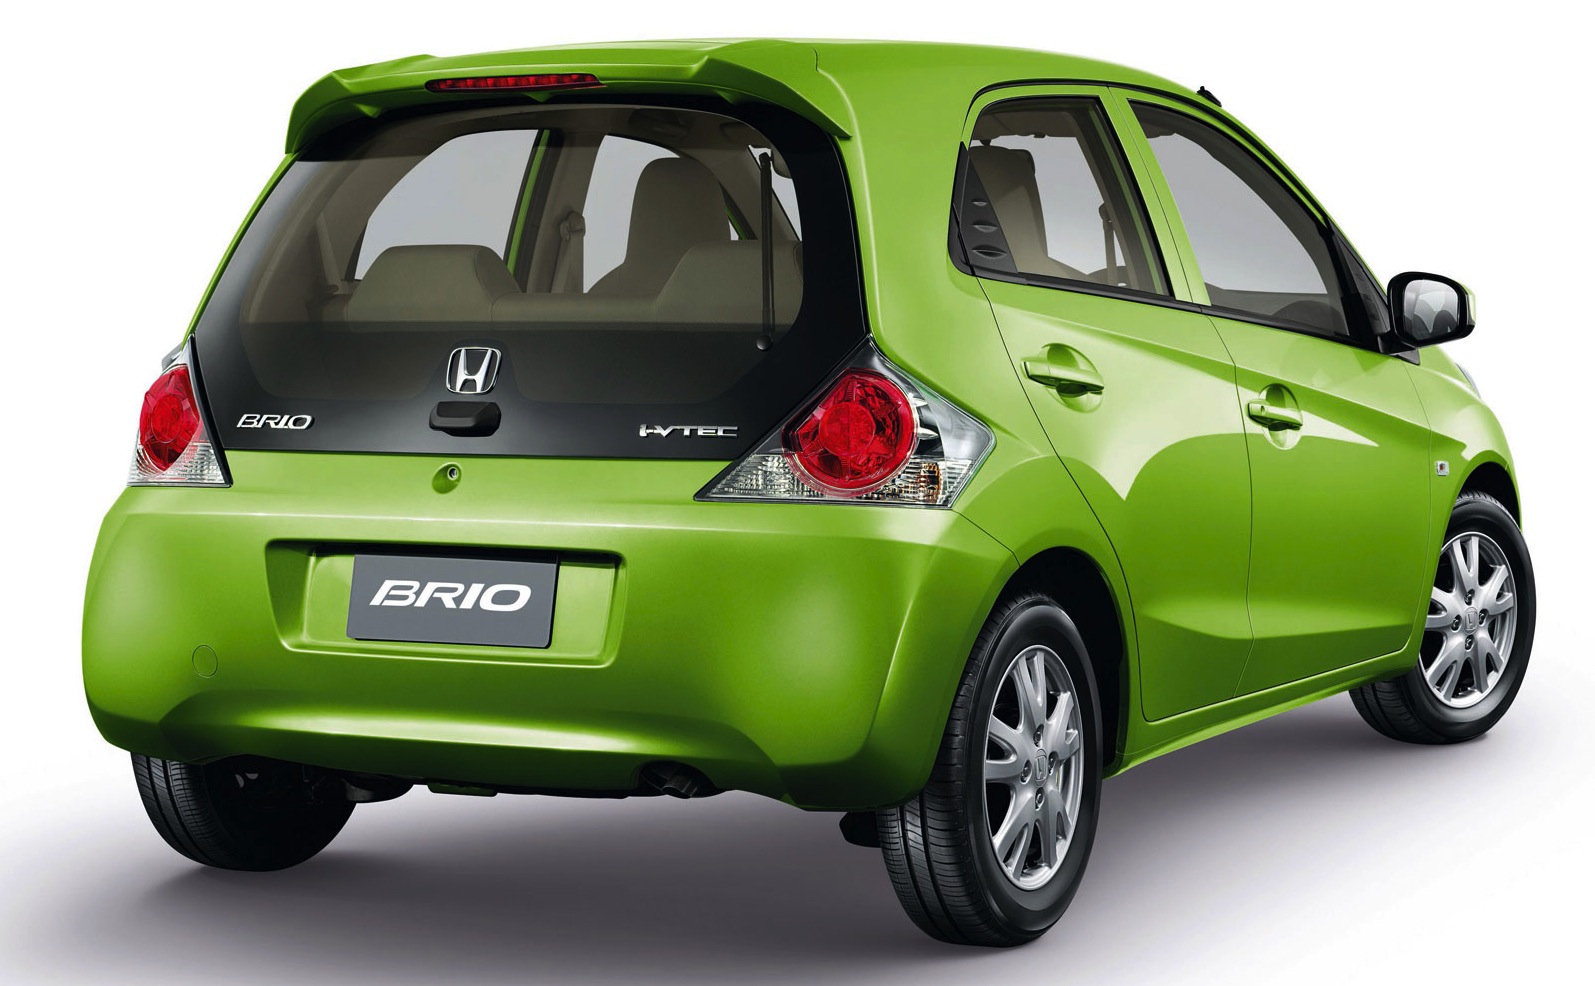 Honda Brio 13 000 micro car a chance for Australia 